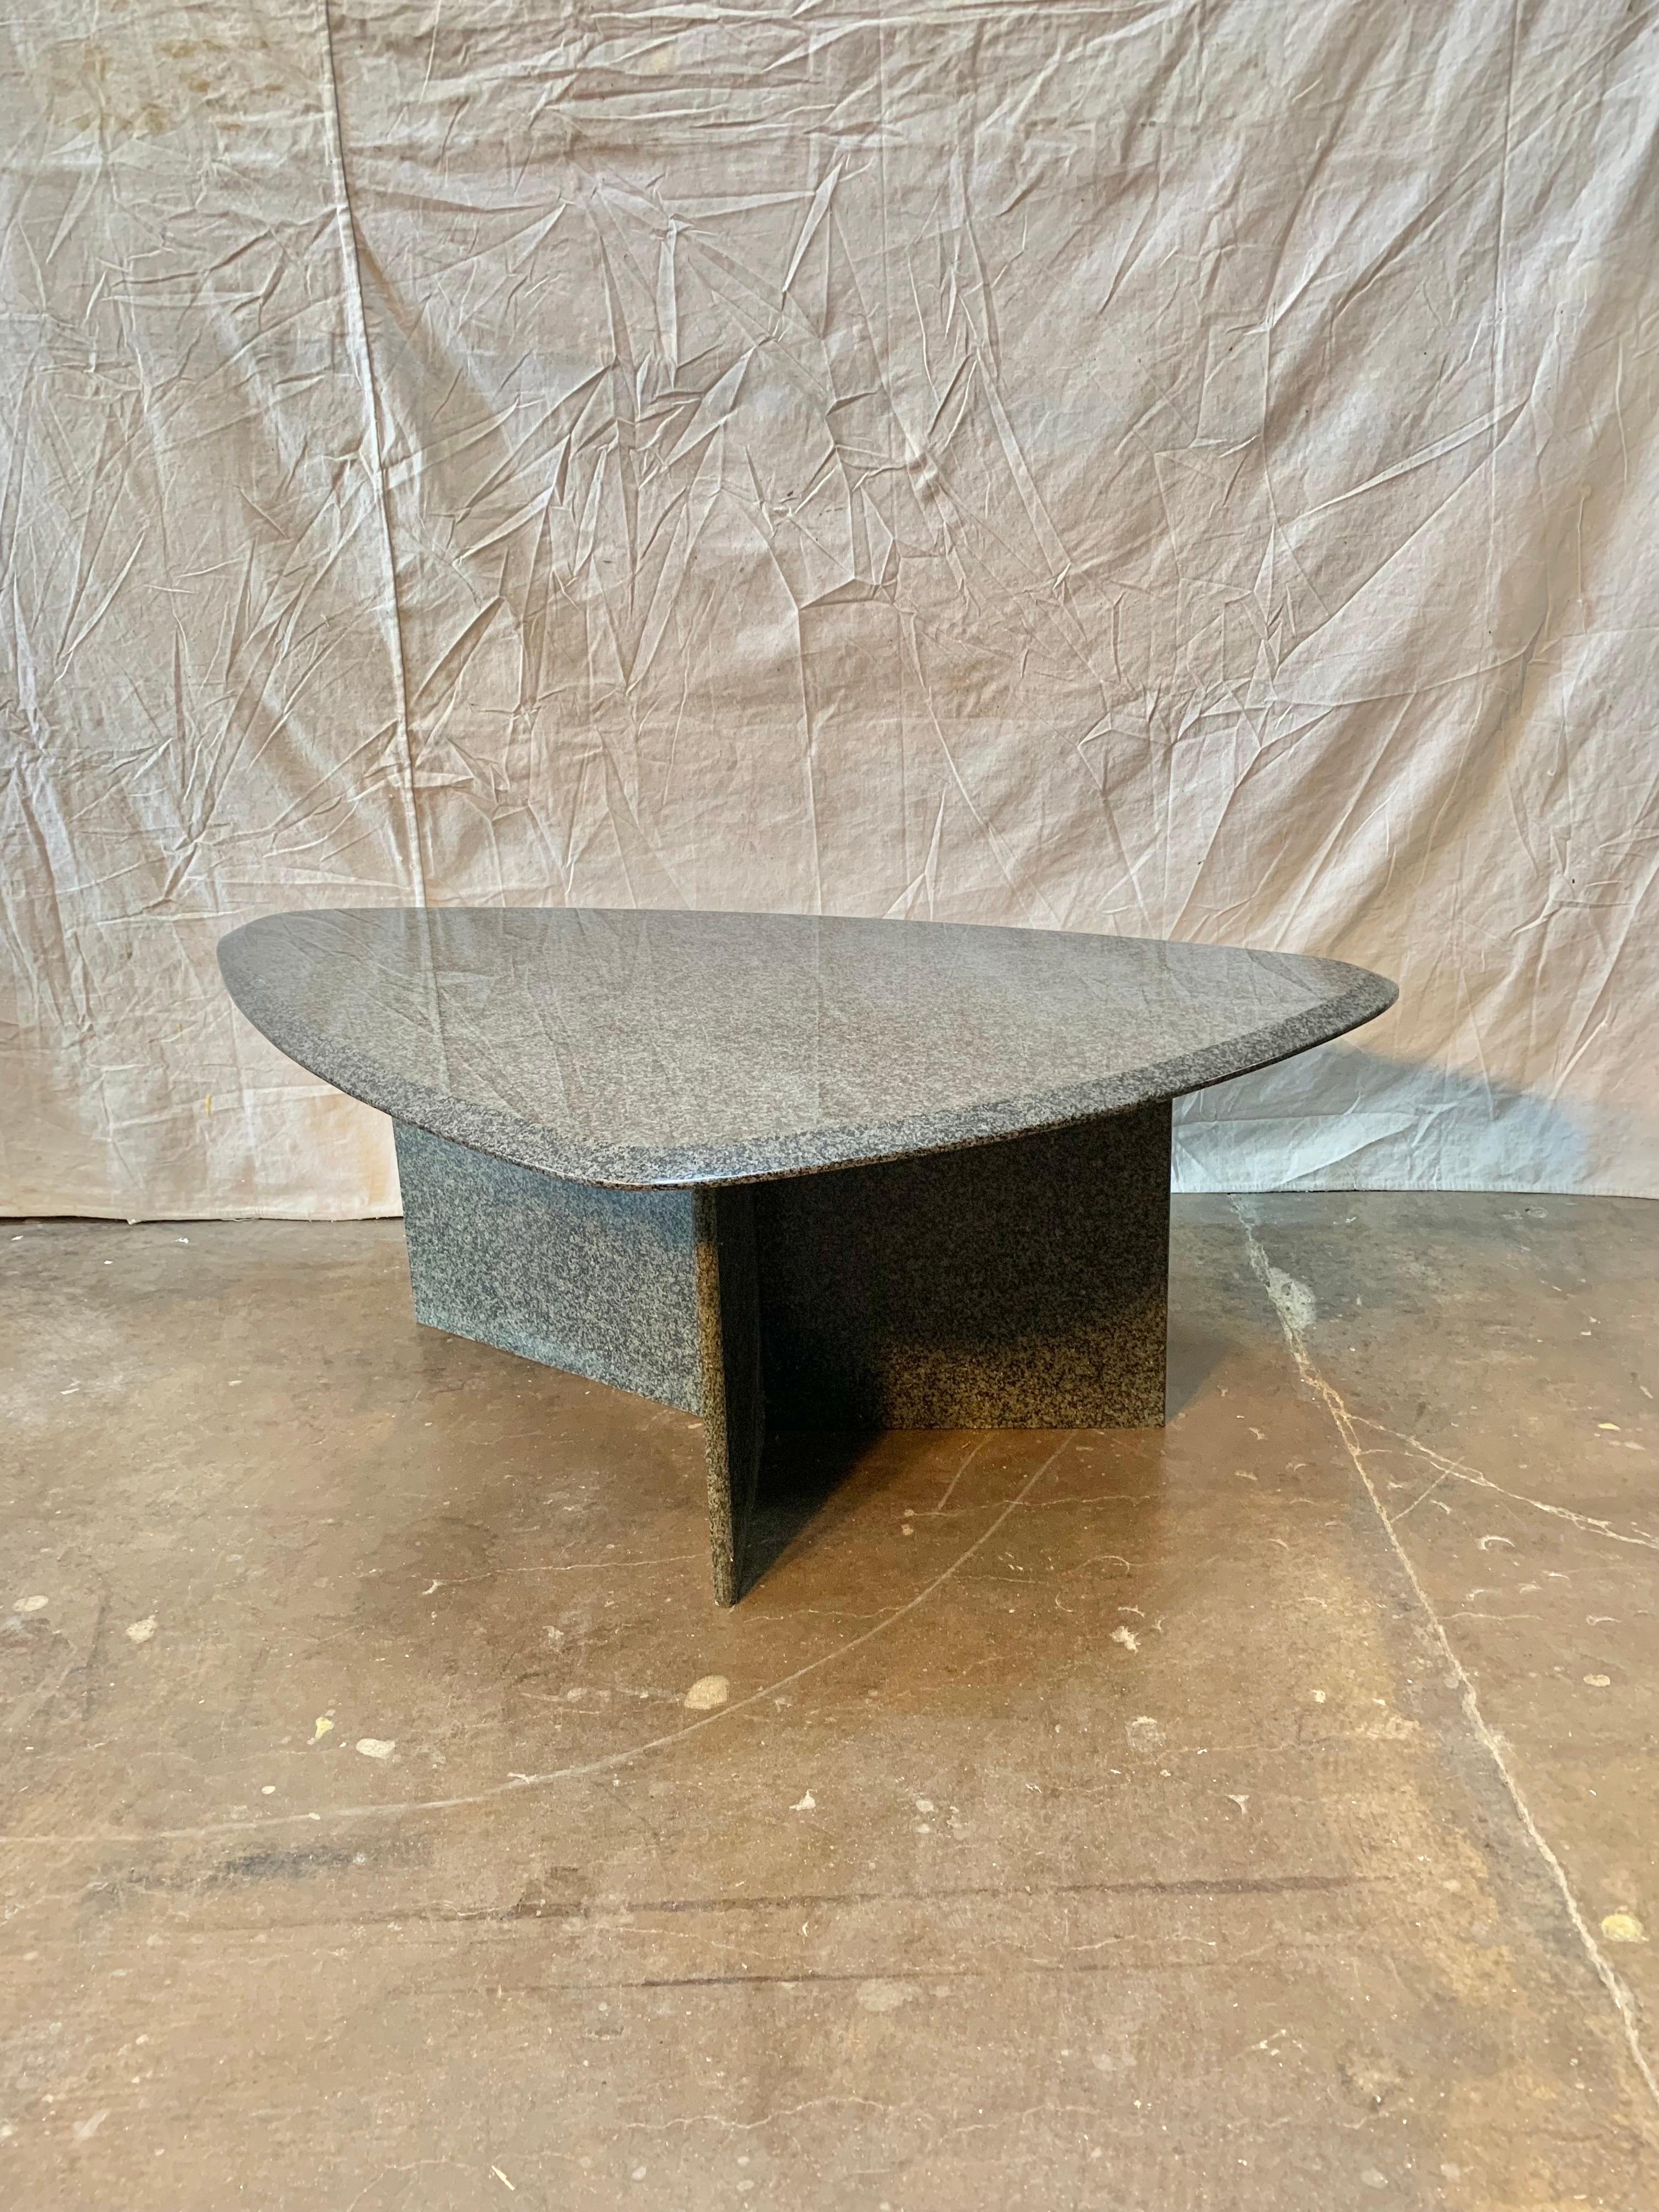 Trouvée dans le sud de la France, cette table basse italienne moderne du milieu du siècle est faite de granit avec des taches de noir et de multiples gris. Le plateau biseauté est de forme triangulaire et est fixé à une base en forme de 